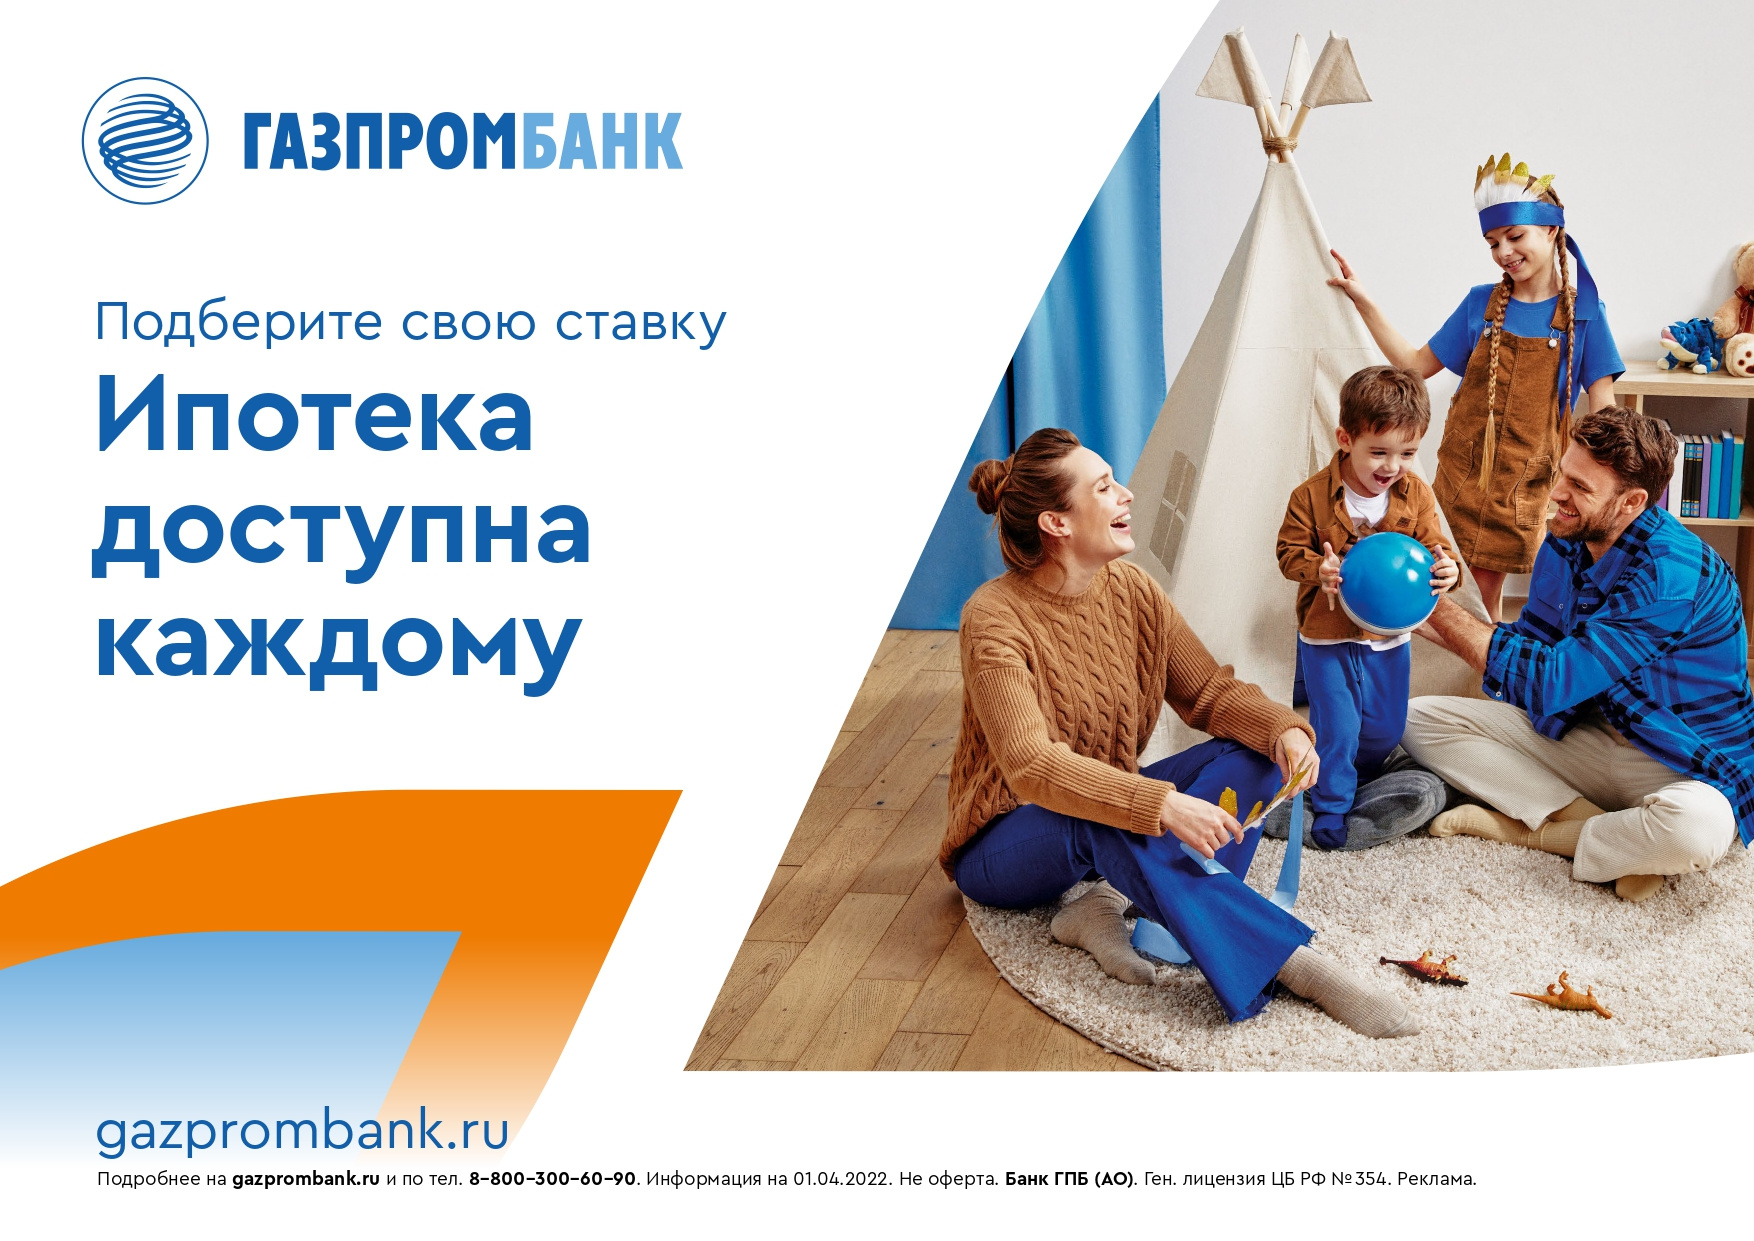 Газпромбанк семейная ипотека. Газпромбанк реклама. Семейная ипотека. Газпромбанк ипотека.